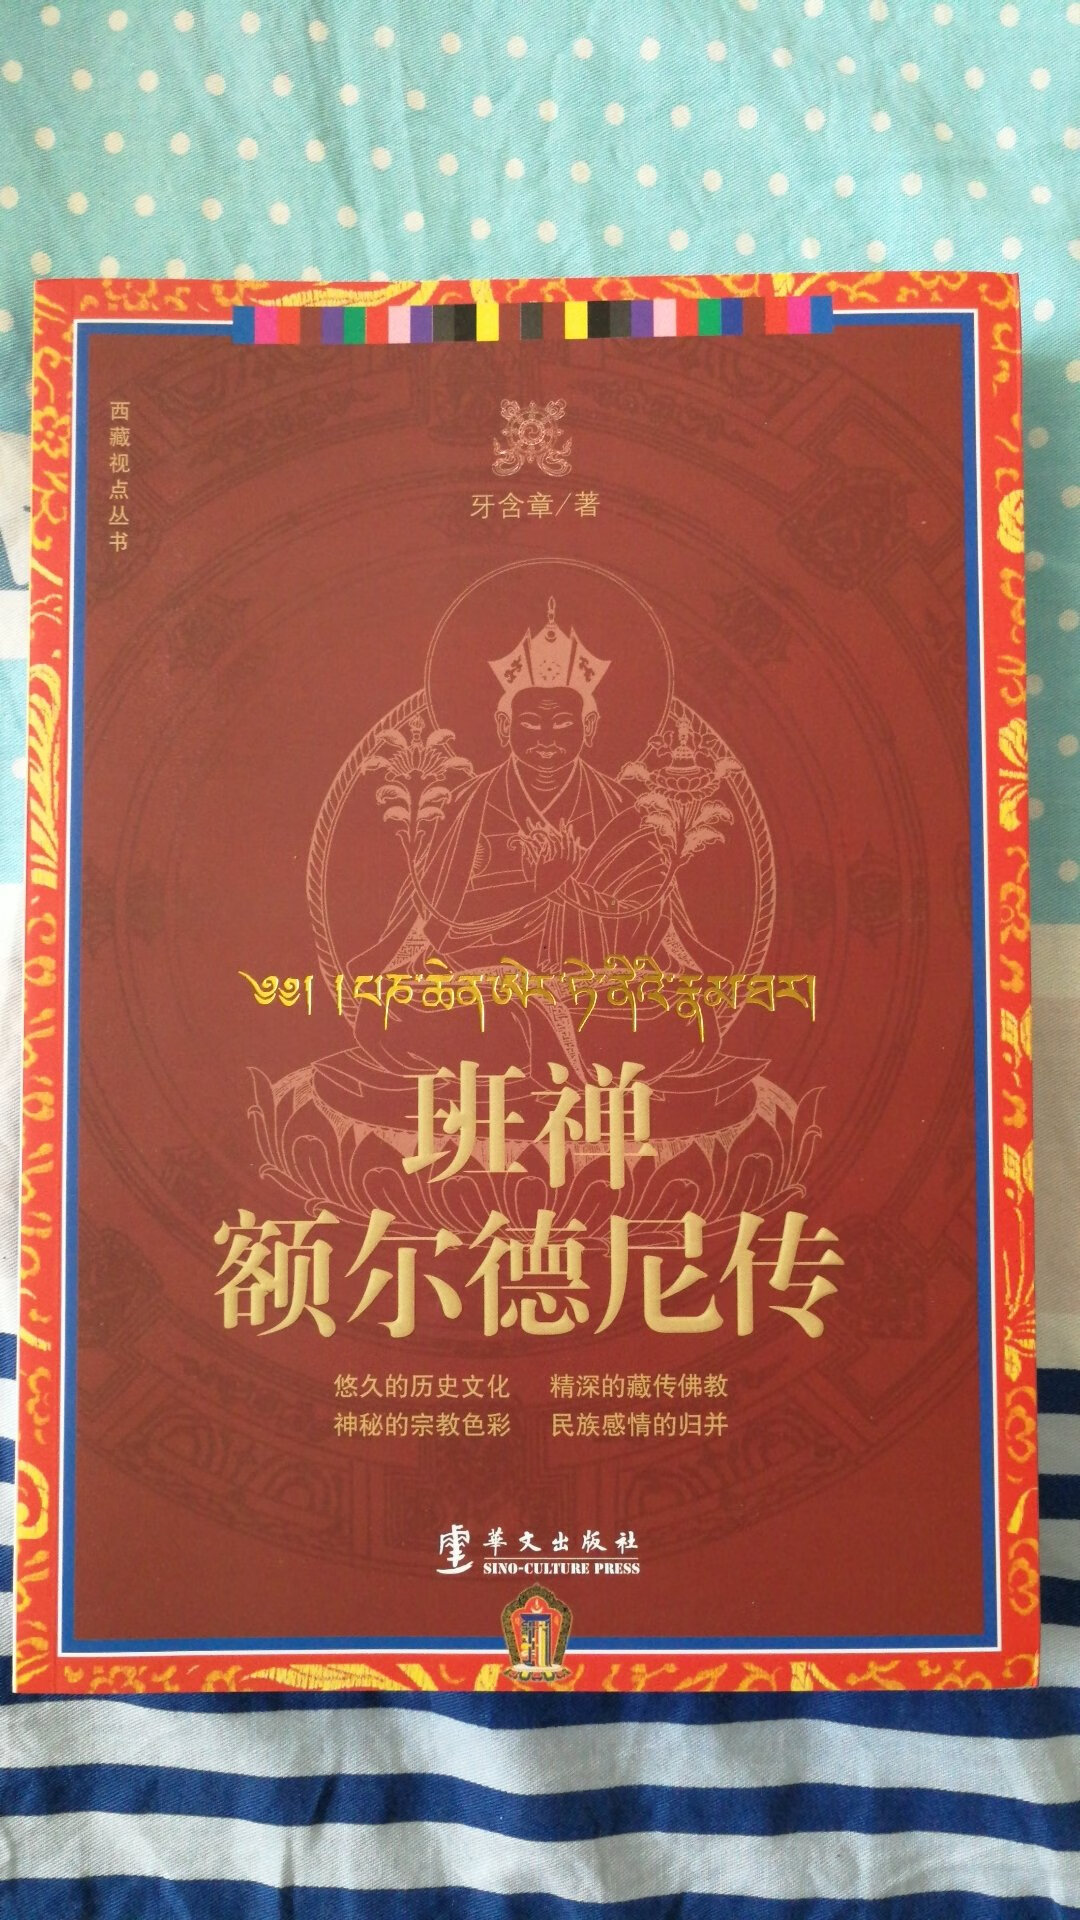 研究西藏历史和社会，藏传佛教的理解有帮助